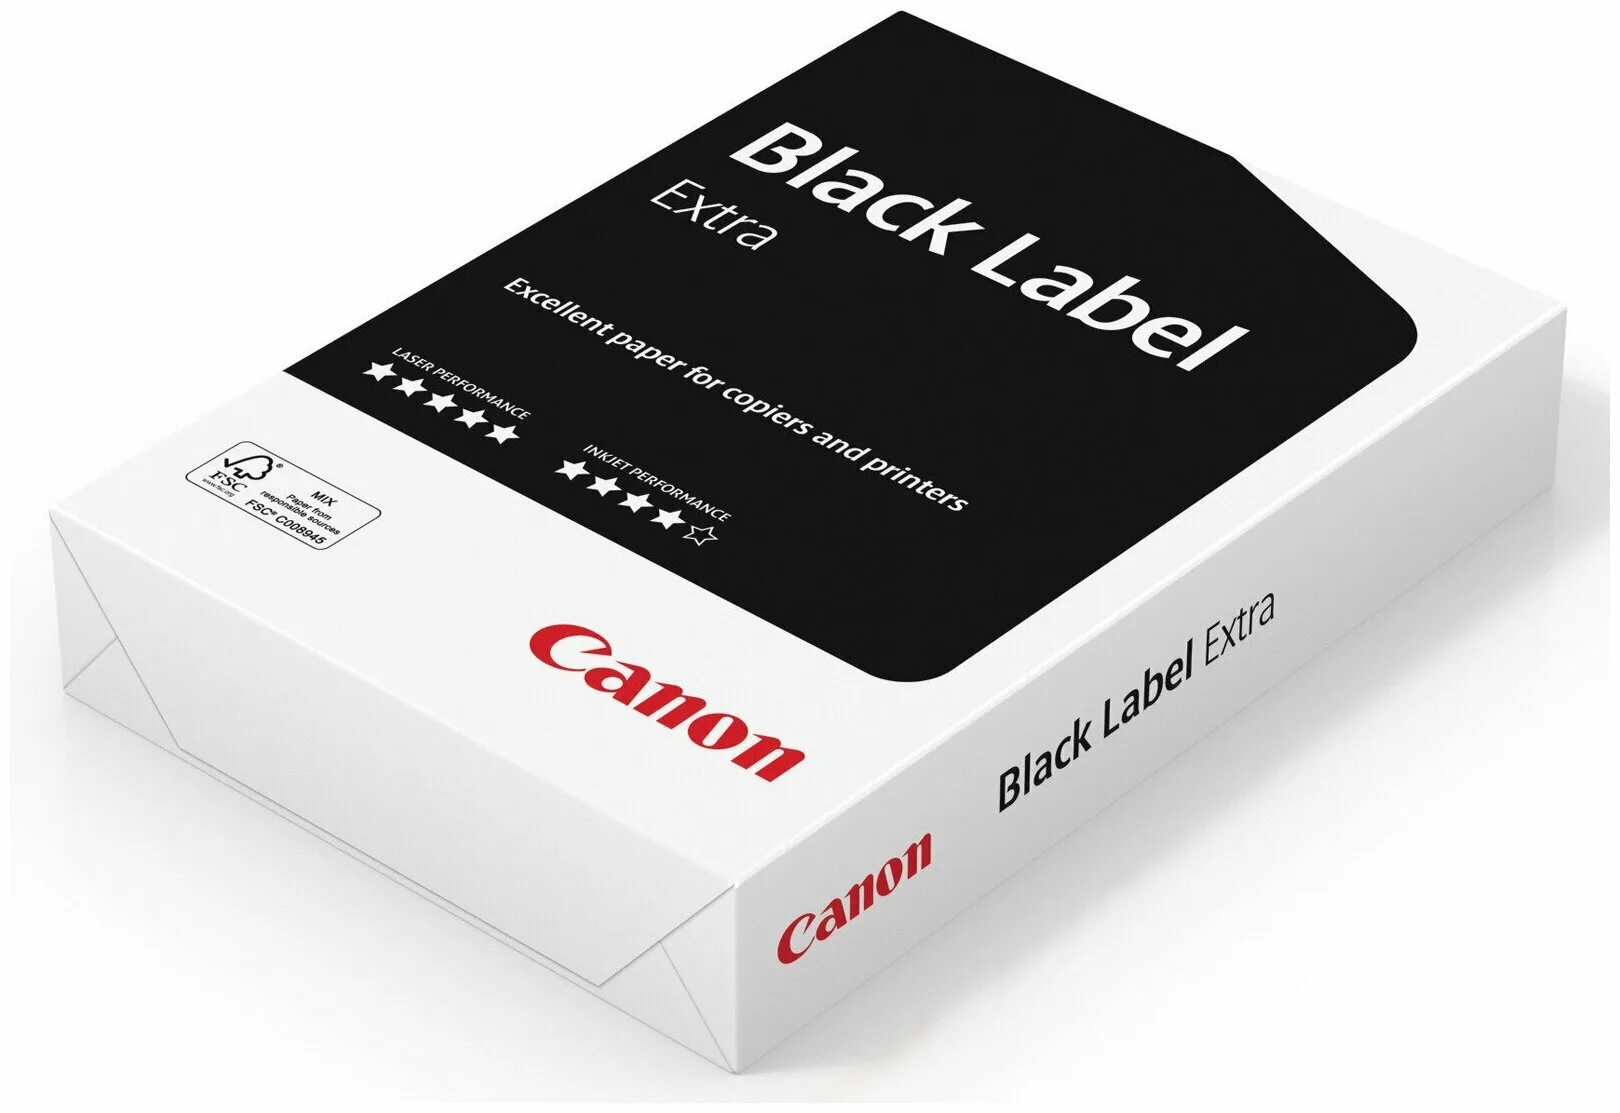 Пачка организация. Бумага Canon Black Label Extra (а4, 80 г/кв.м, белизна 162% Cie, 500 листов). Бумага Canon Black Label Extra. Бумага Canon a4 Black Label производитель. Canon Black Label Extra а4.